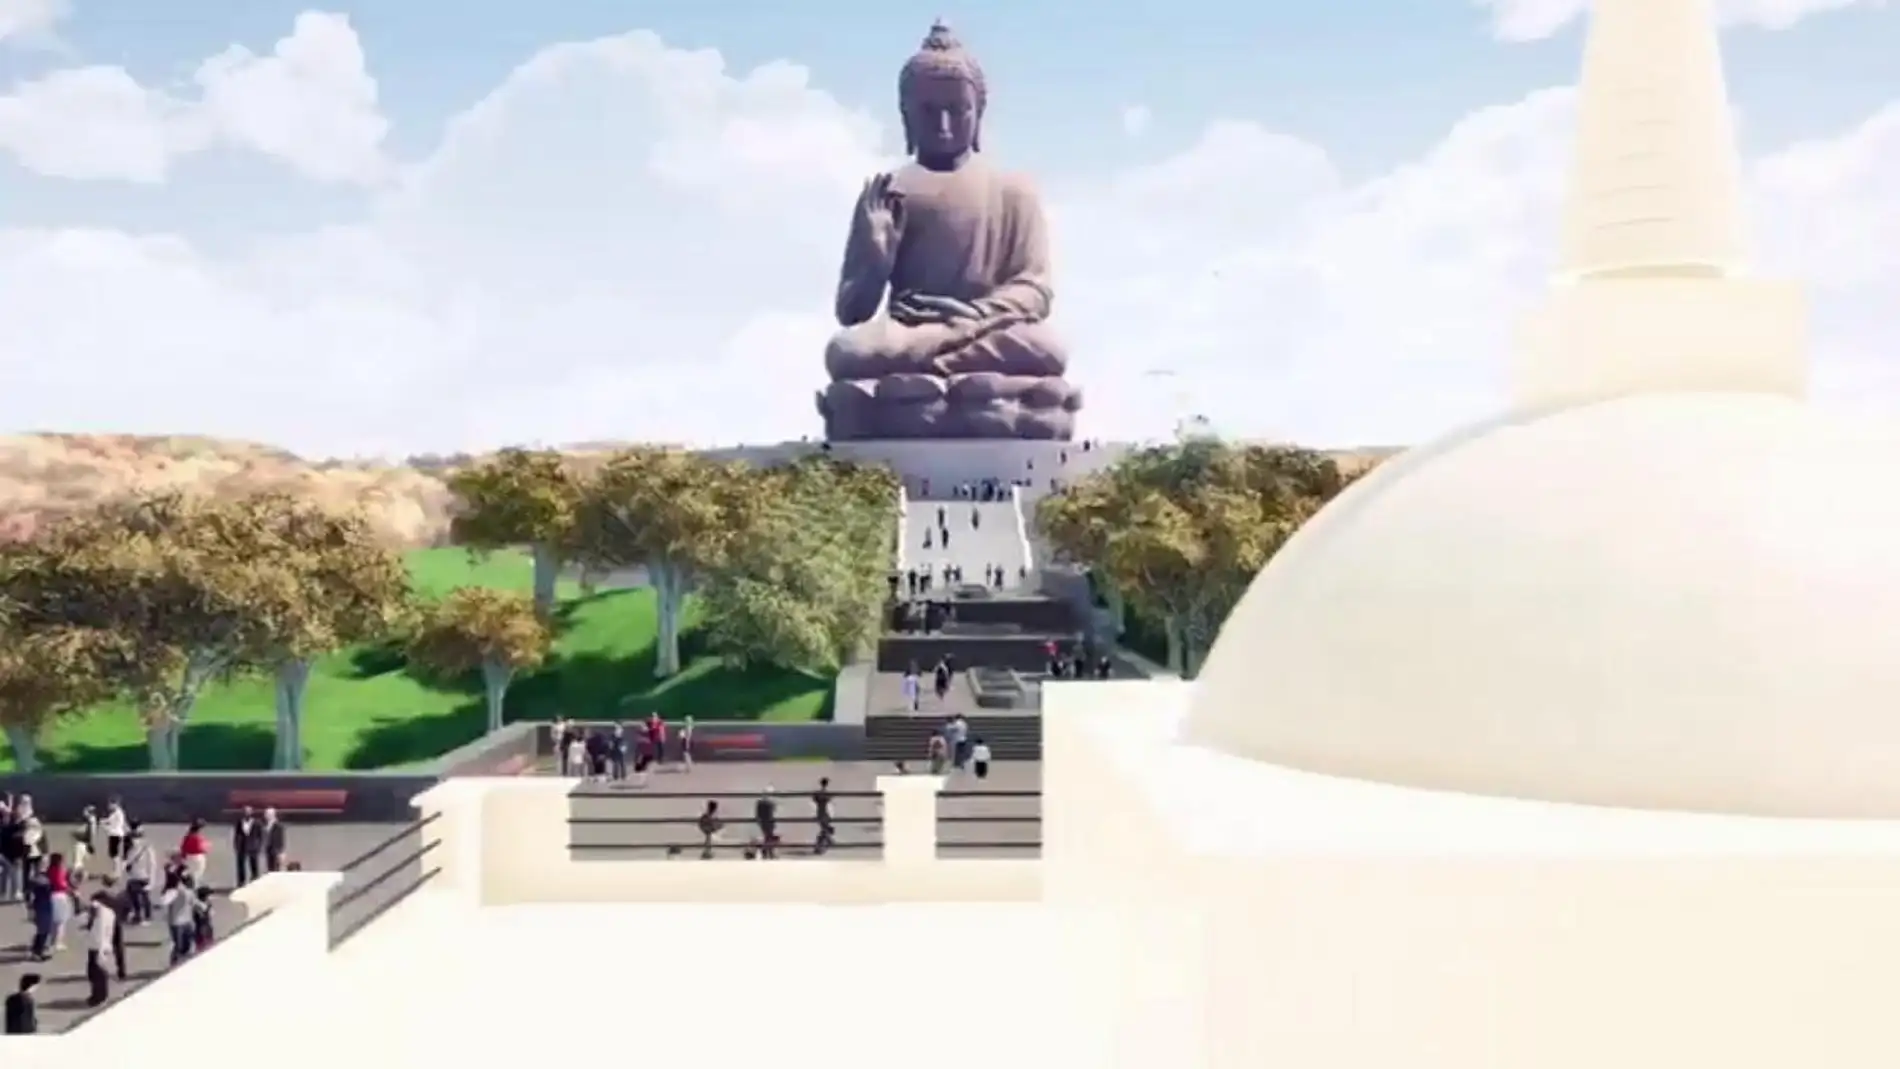 Luis Salaya cree que en dos años comenzará la obra del templo budista de Cáceres